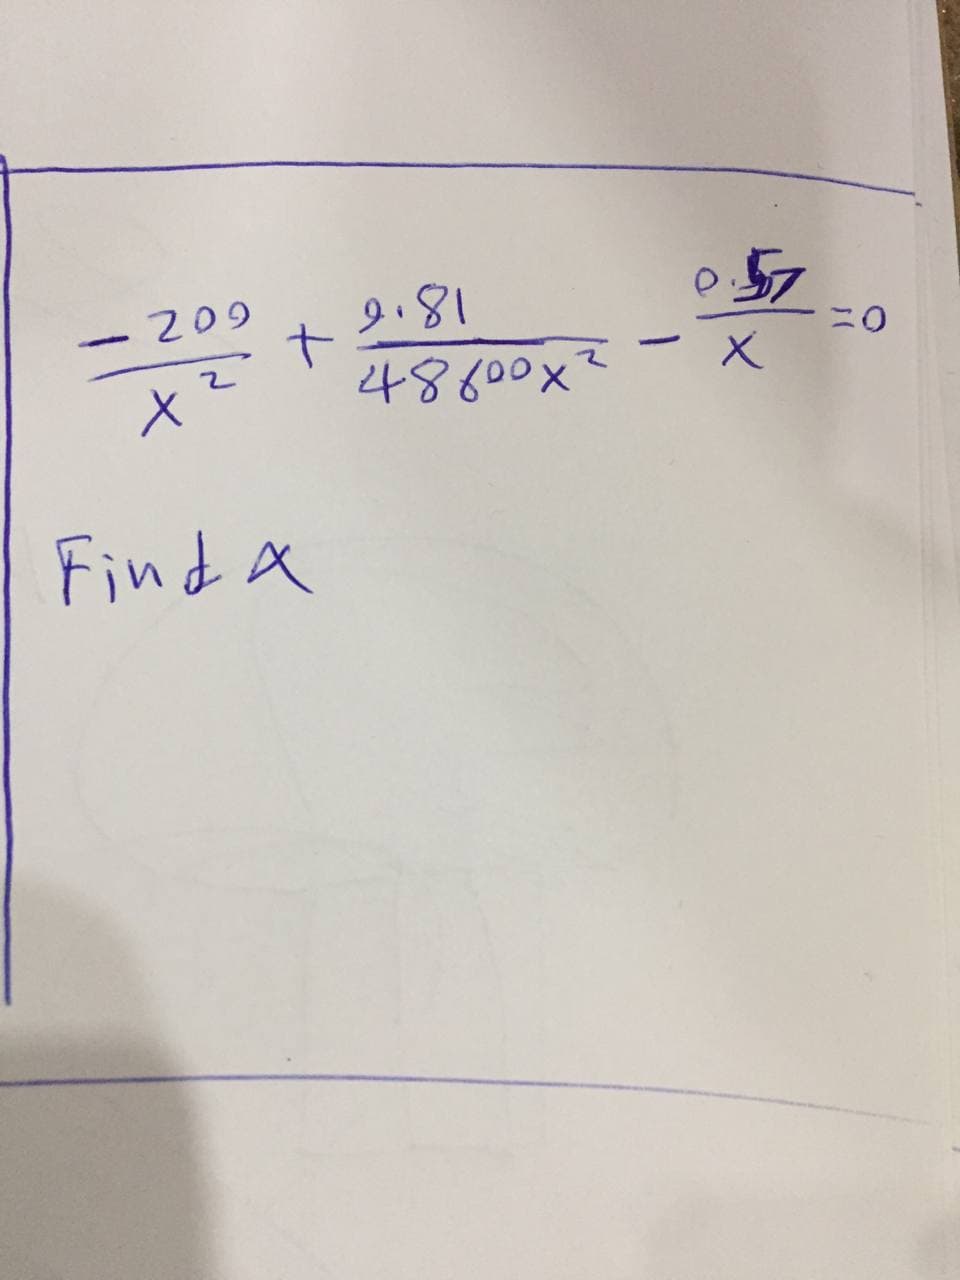 .209
x ²
Find a
+
18.6
48600x²
-
57
·x
0=